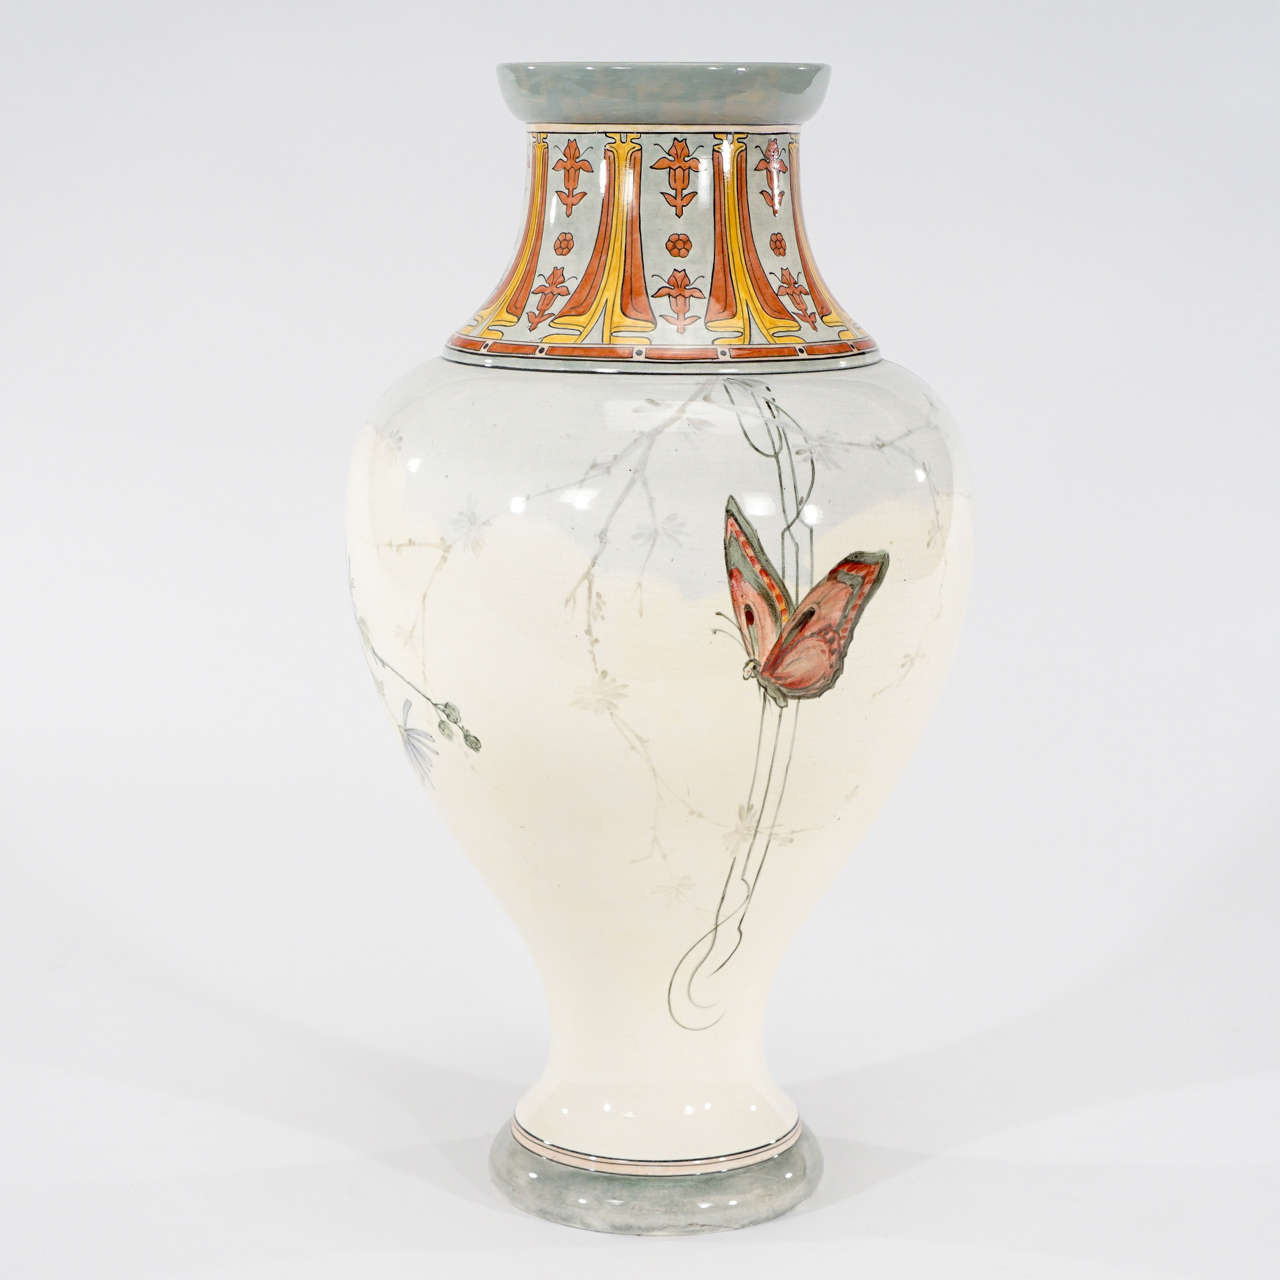 Il s'agit d'un extraordinaire vase monumental en porcelaine française qui incarne la décoration Art nouveau. Les émaux polychromes peints à la main représentent une femme semi-nue vêtue d'une robe fluide et transparente. Le vase est entouré au